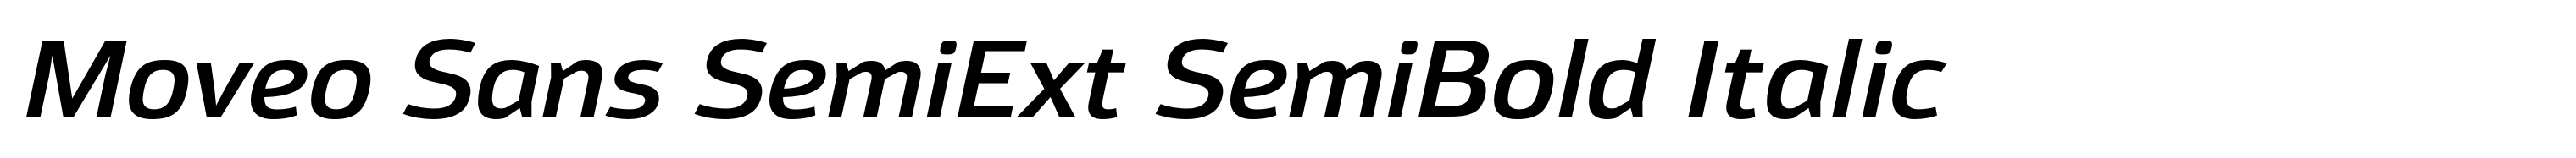 Moveo Sans SemiExt SemiBold Italic